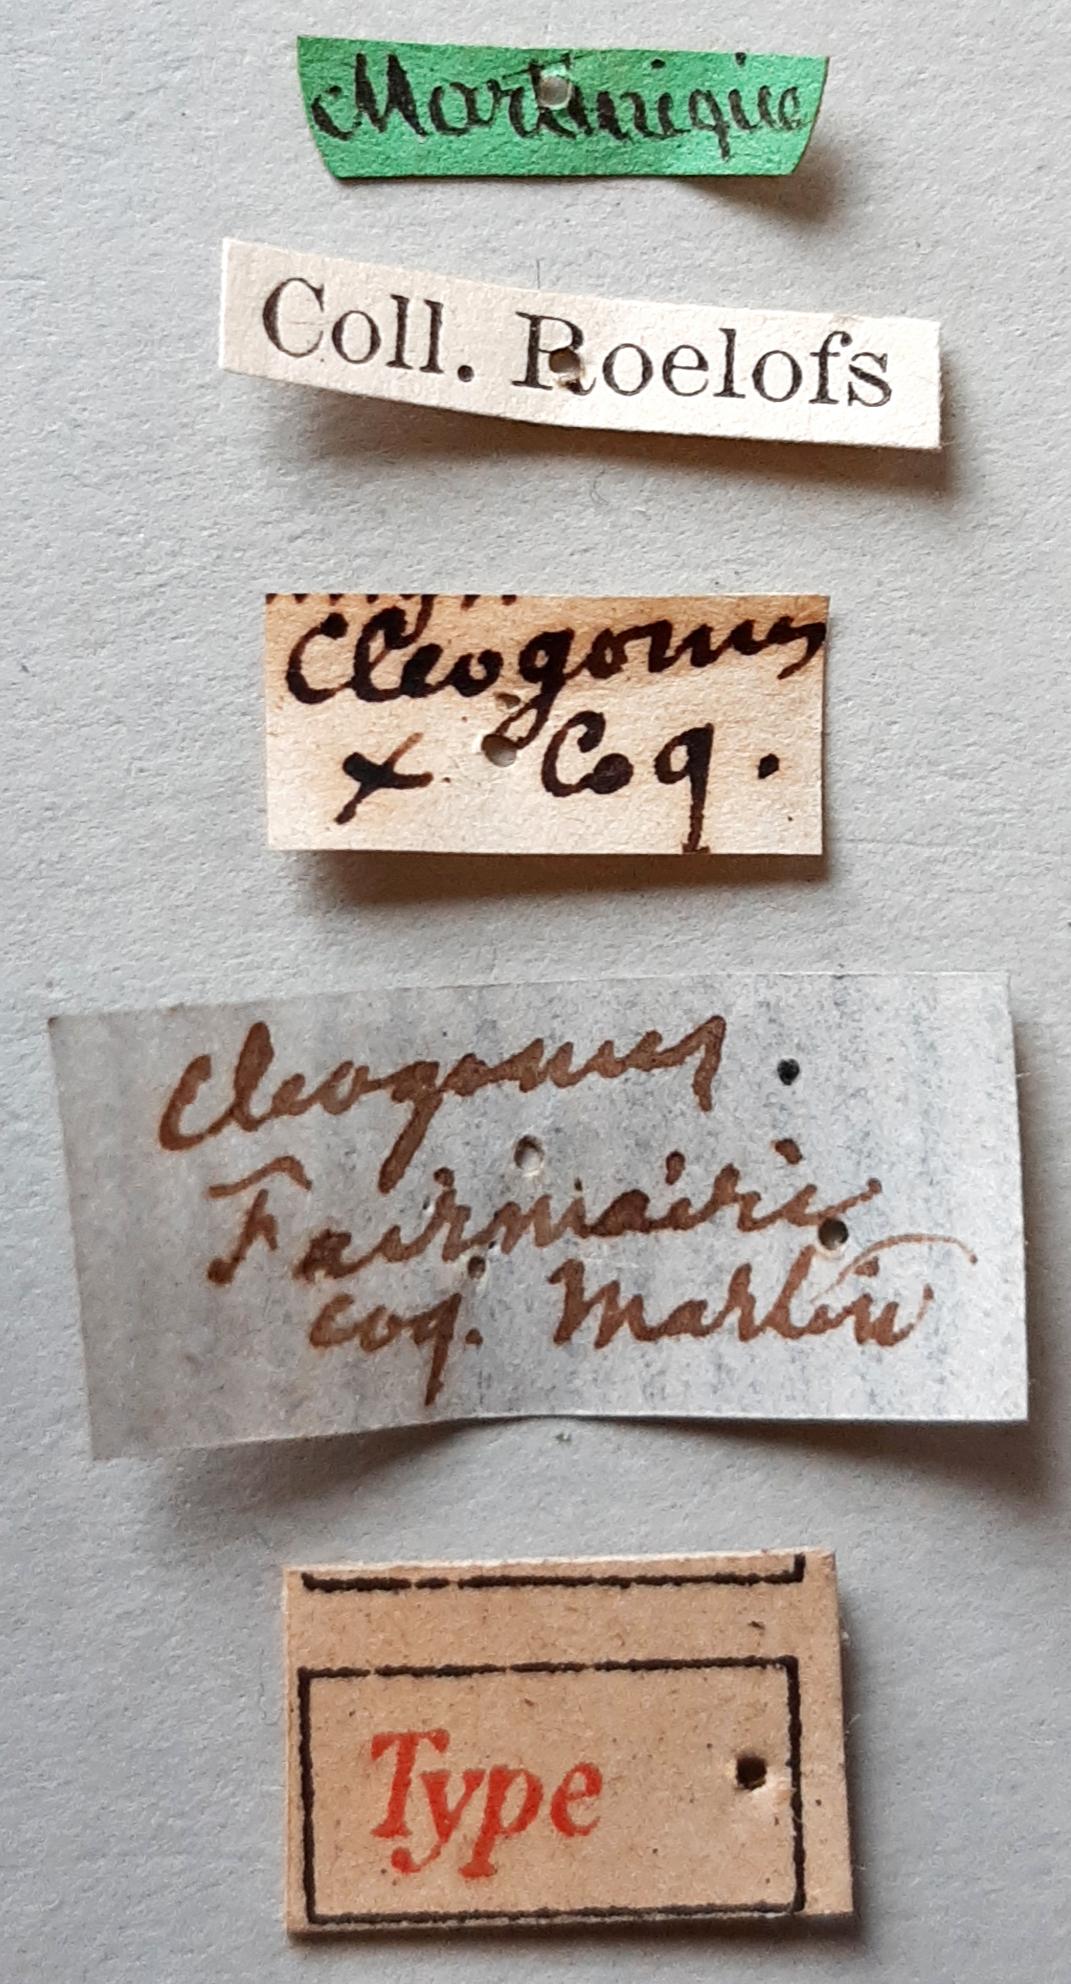 Cleogonus fairmairei Ht labels